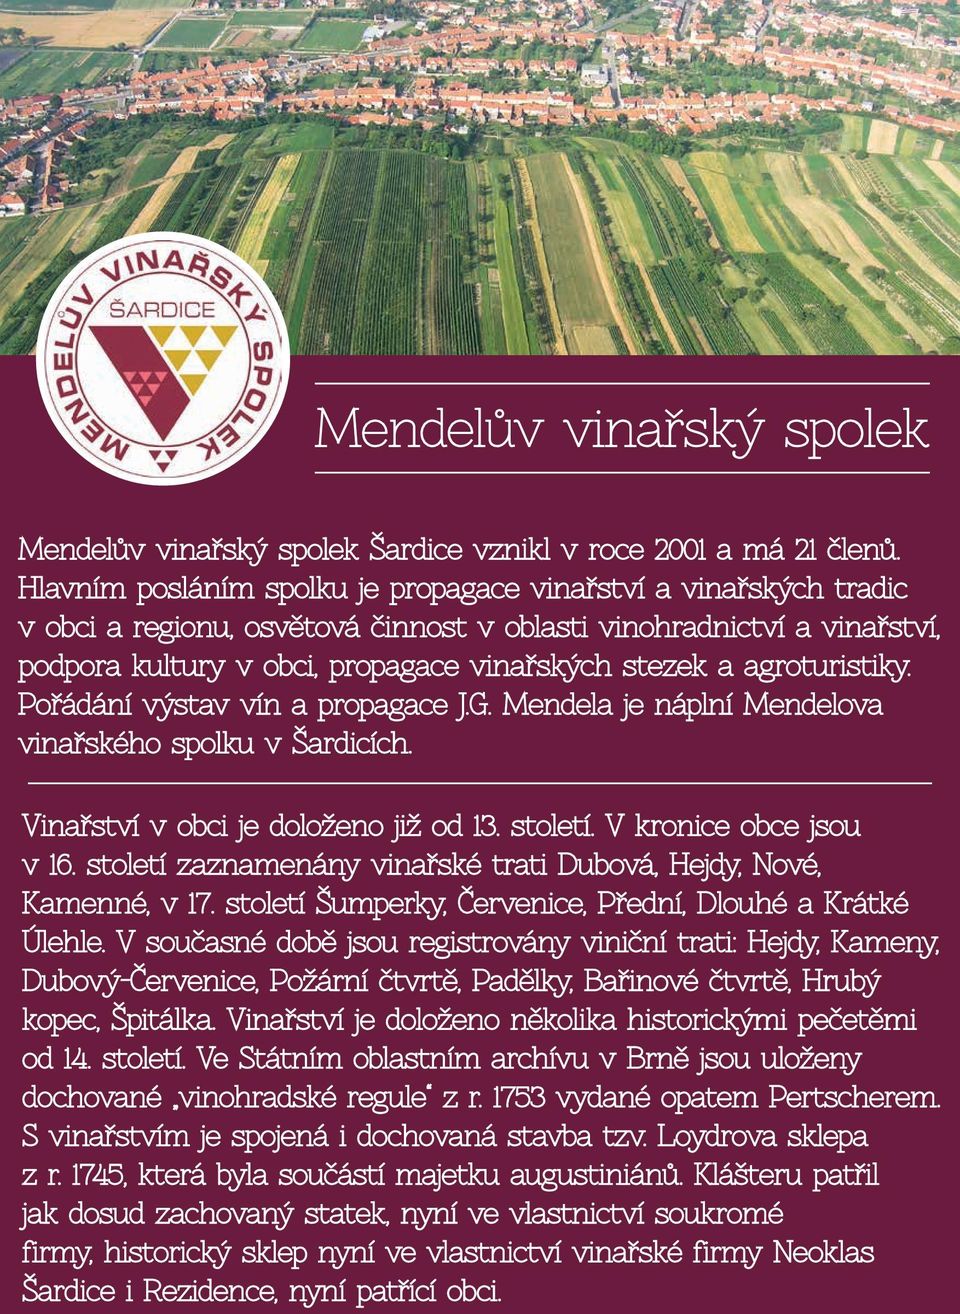 agroturistiky. Pořádání výstav vín a propagace J.G. Mendela je náplní Mendelova vinařského spolku v Šardicích. Vinařství v obci je doloženo již od 13. století. V kronice obce jsou v 16.